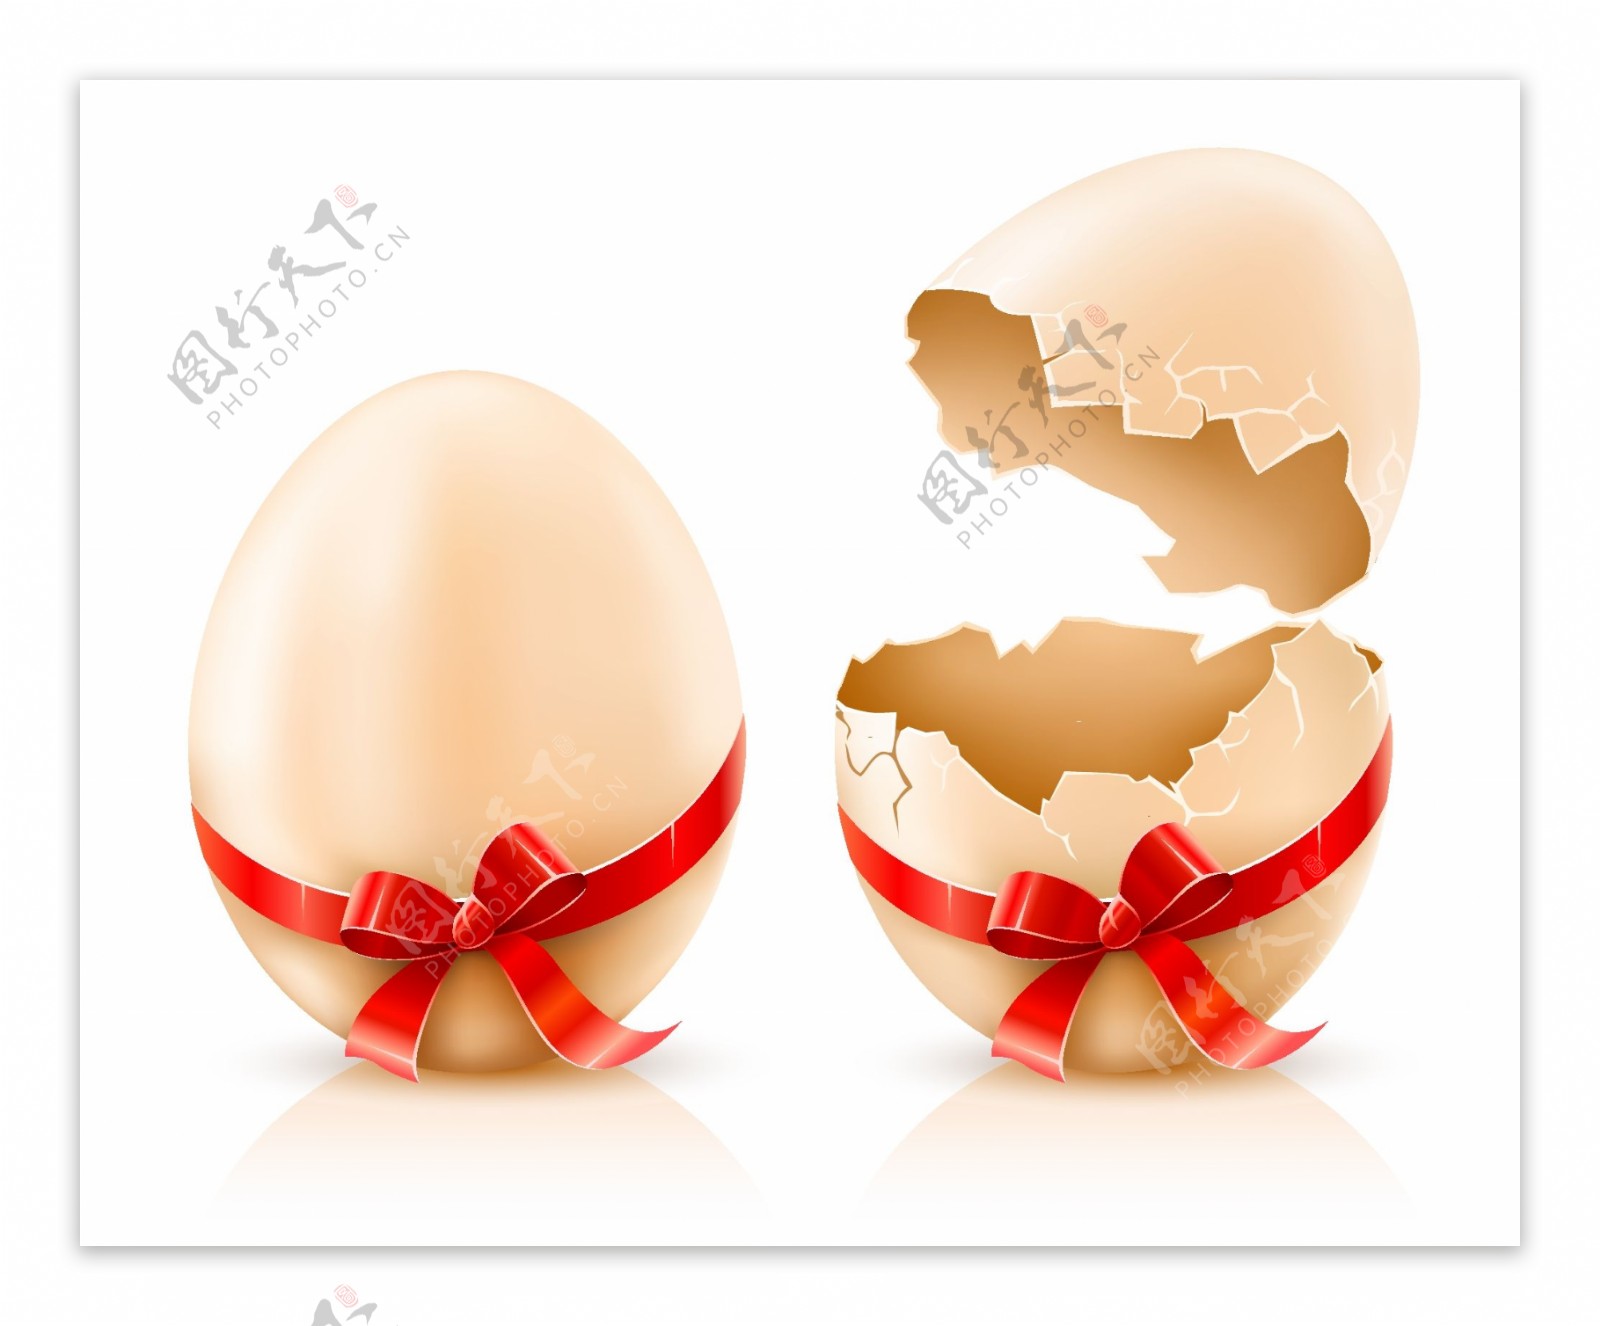 破壳鸡蛋